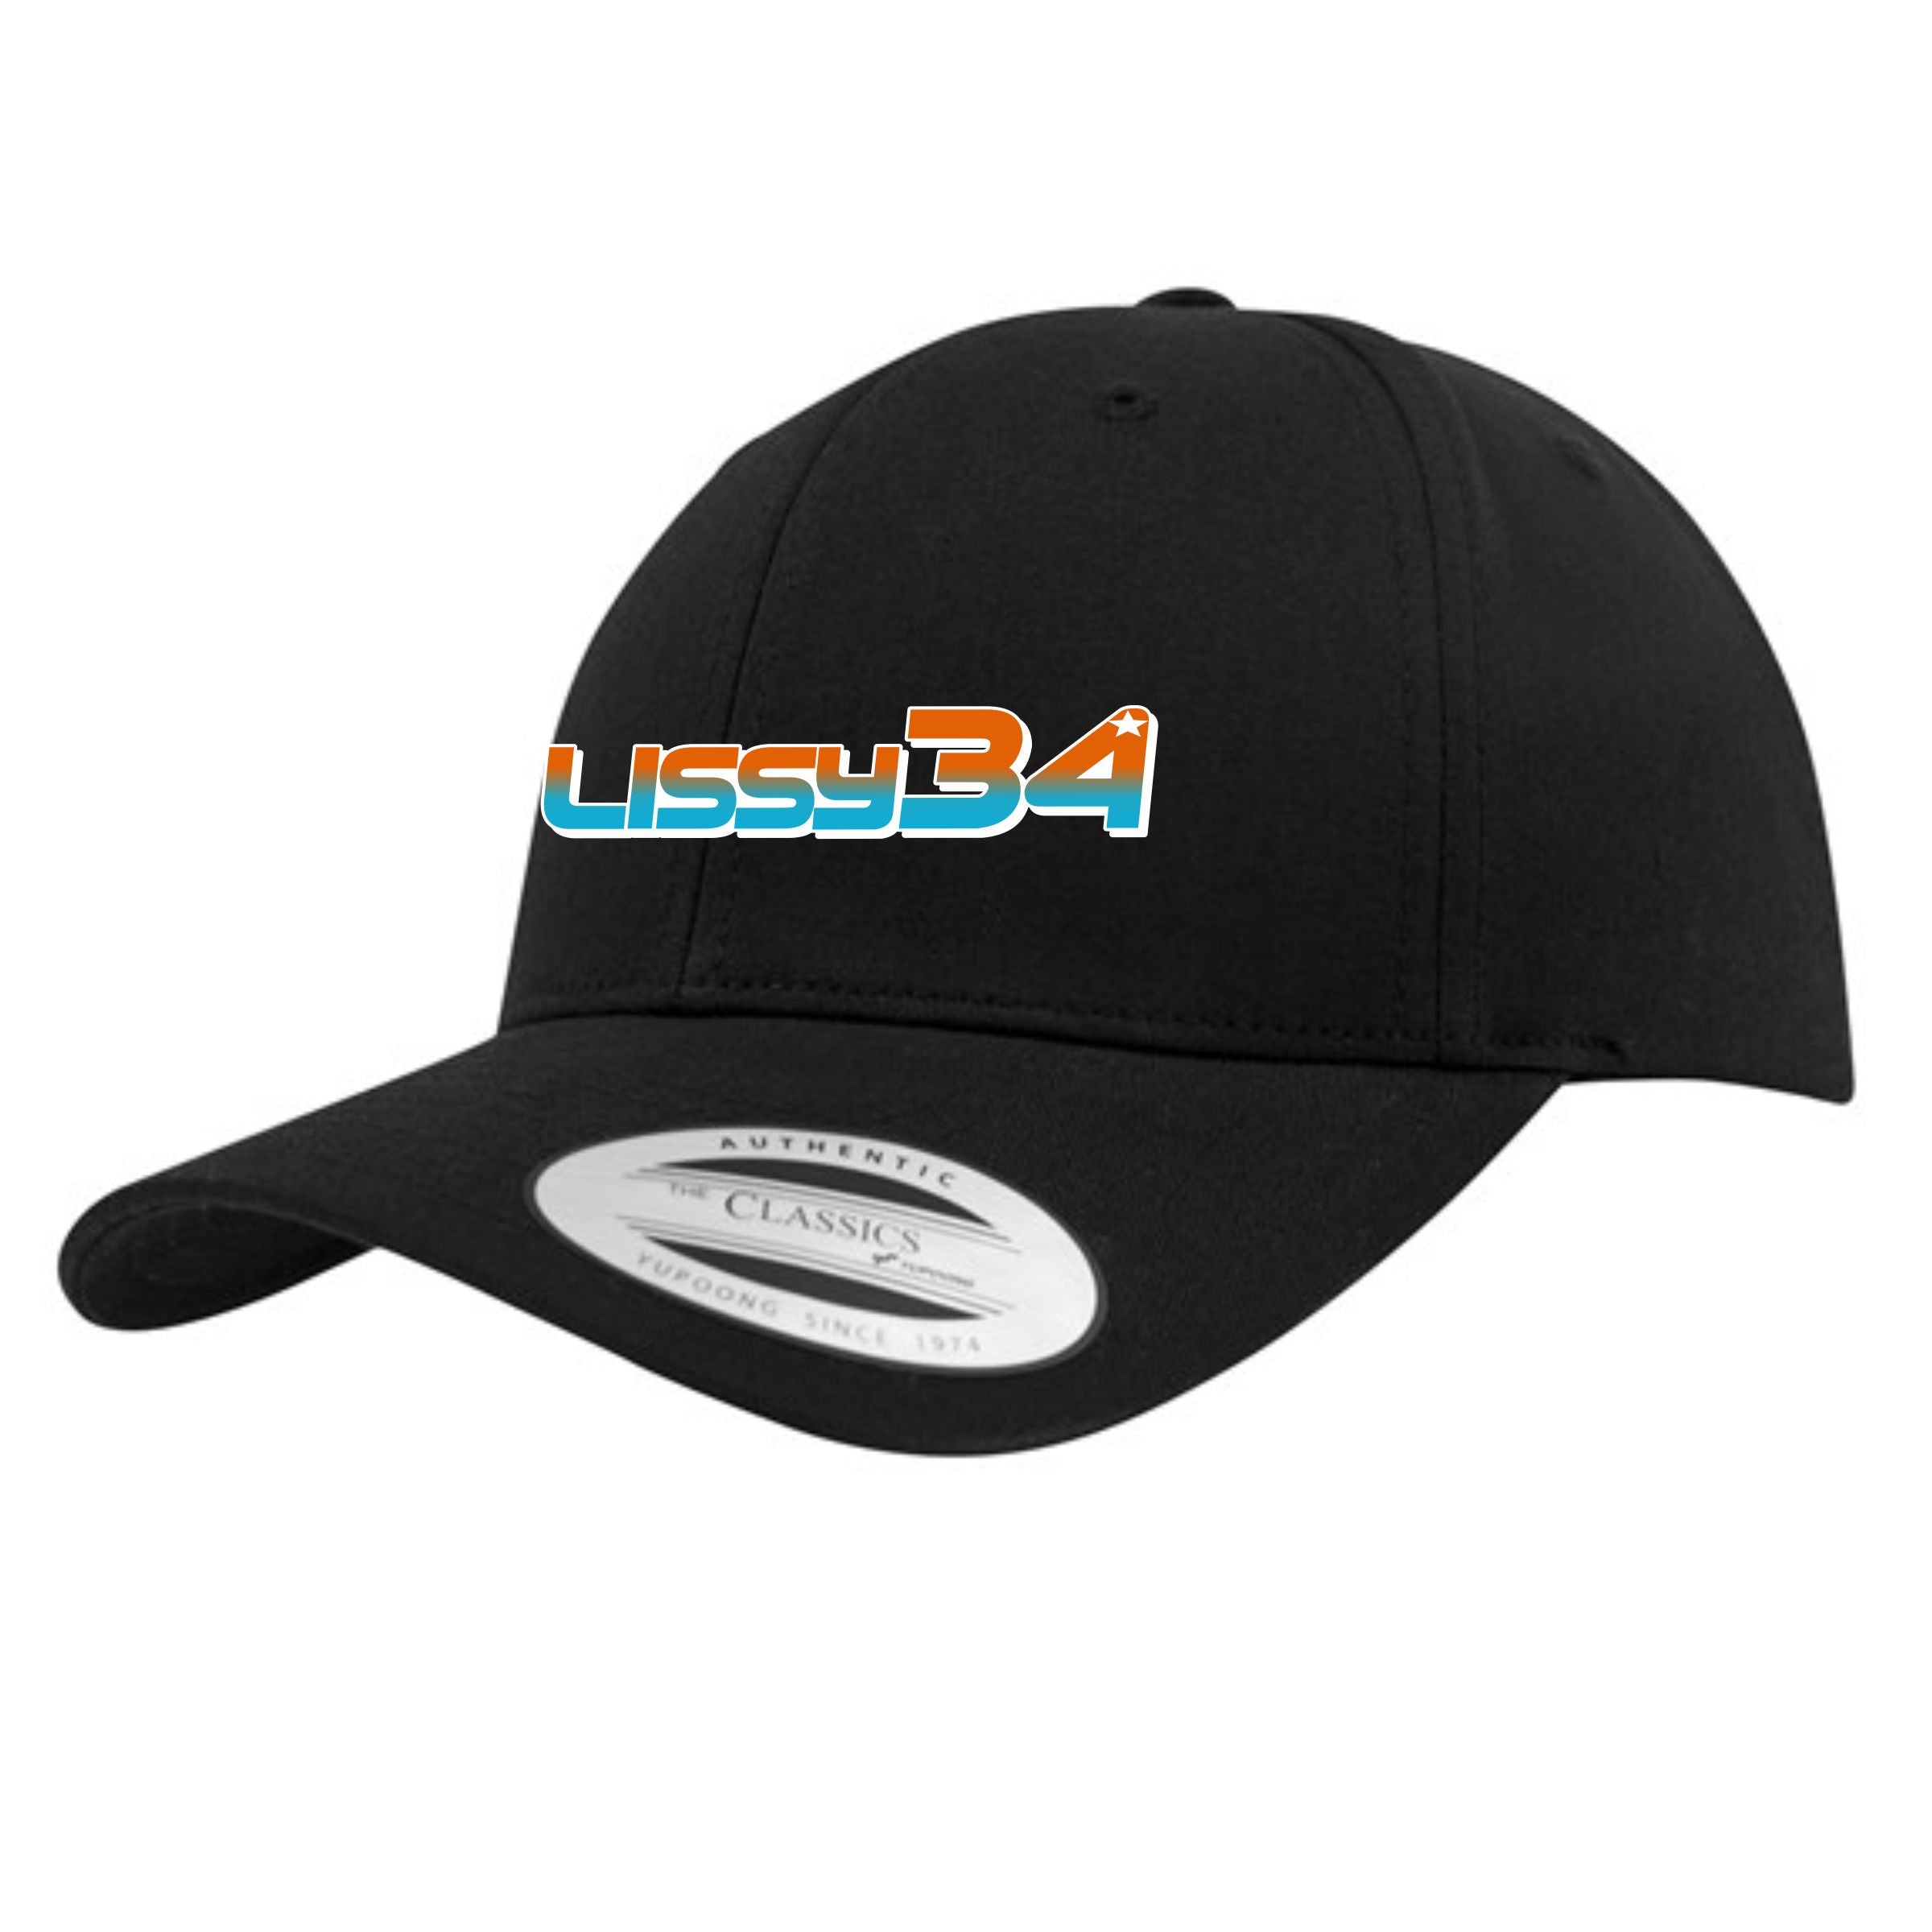 Lissy34 Fade Baseball Cap